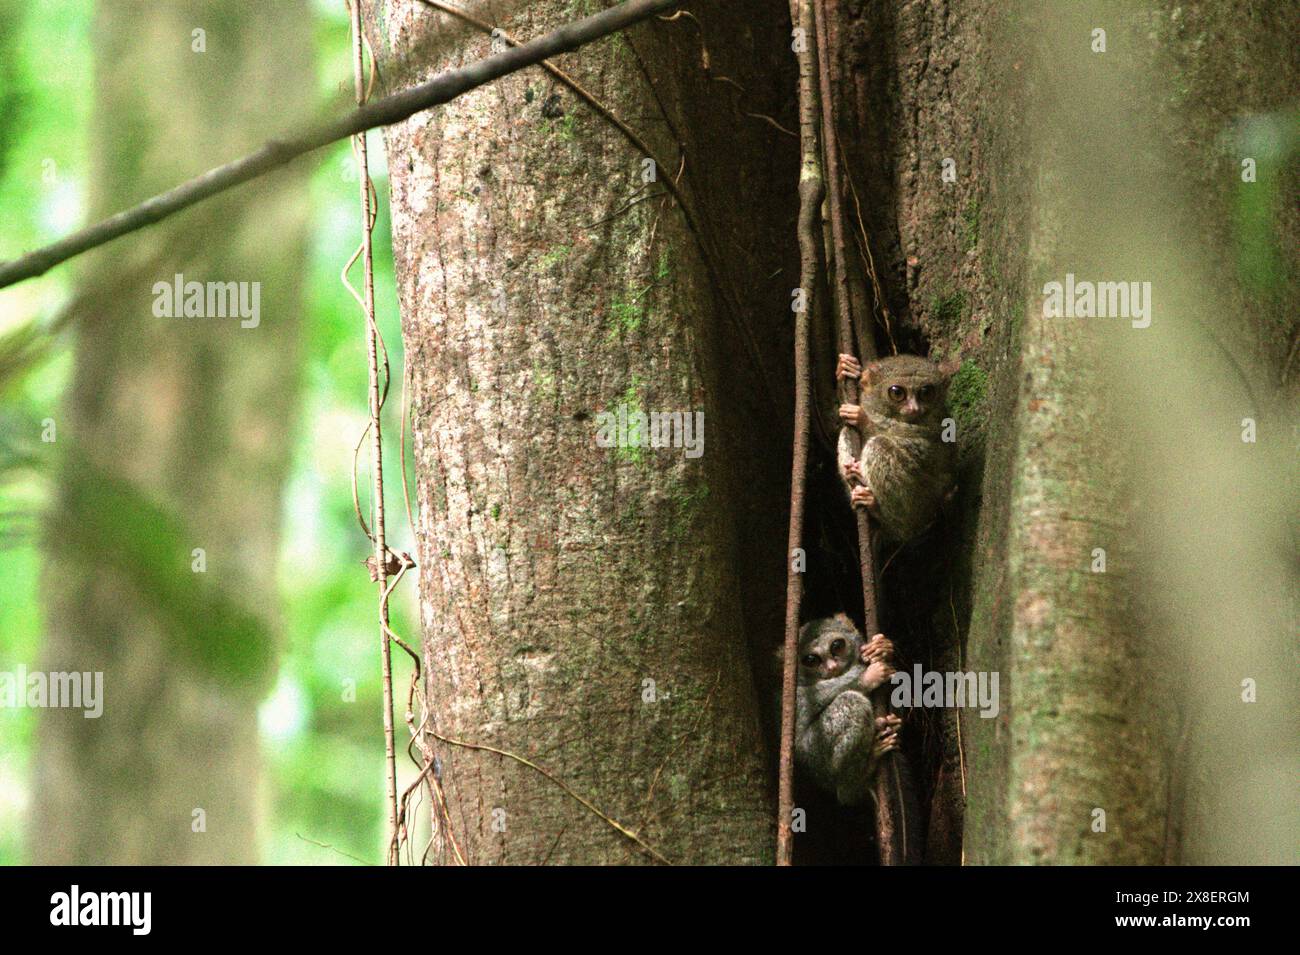 Tarsiers spectraux (Tarsius spectrumgurskyae), primates nocturnes, sur leur arbre de nid en plein jour, dans la réserve naturelle de Tangkoko, Indonésie. Banque D'Images